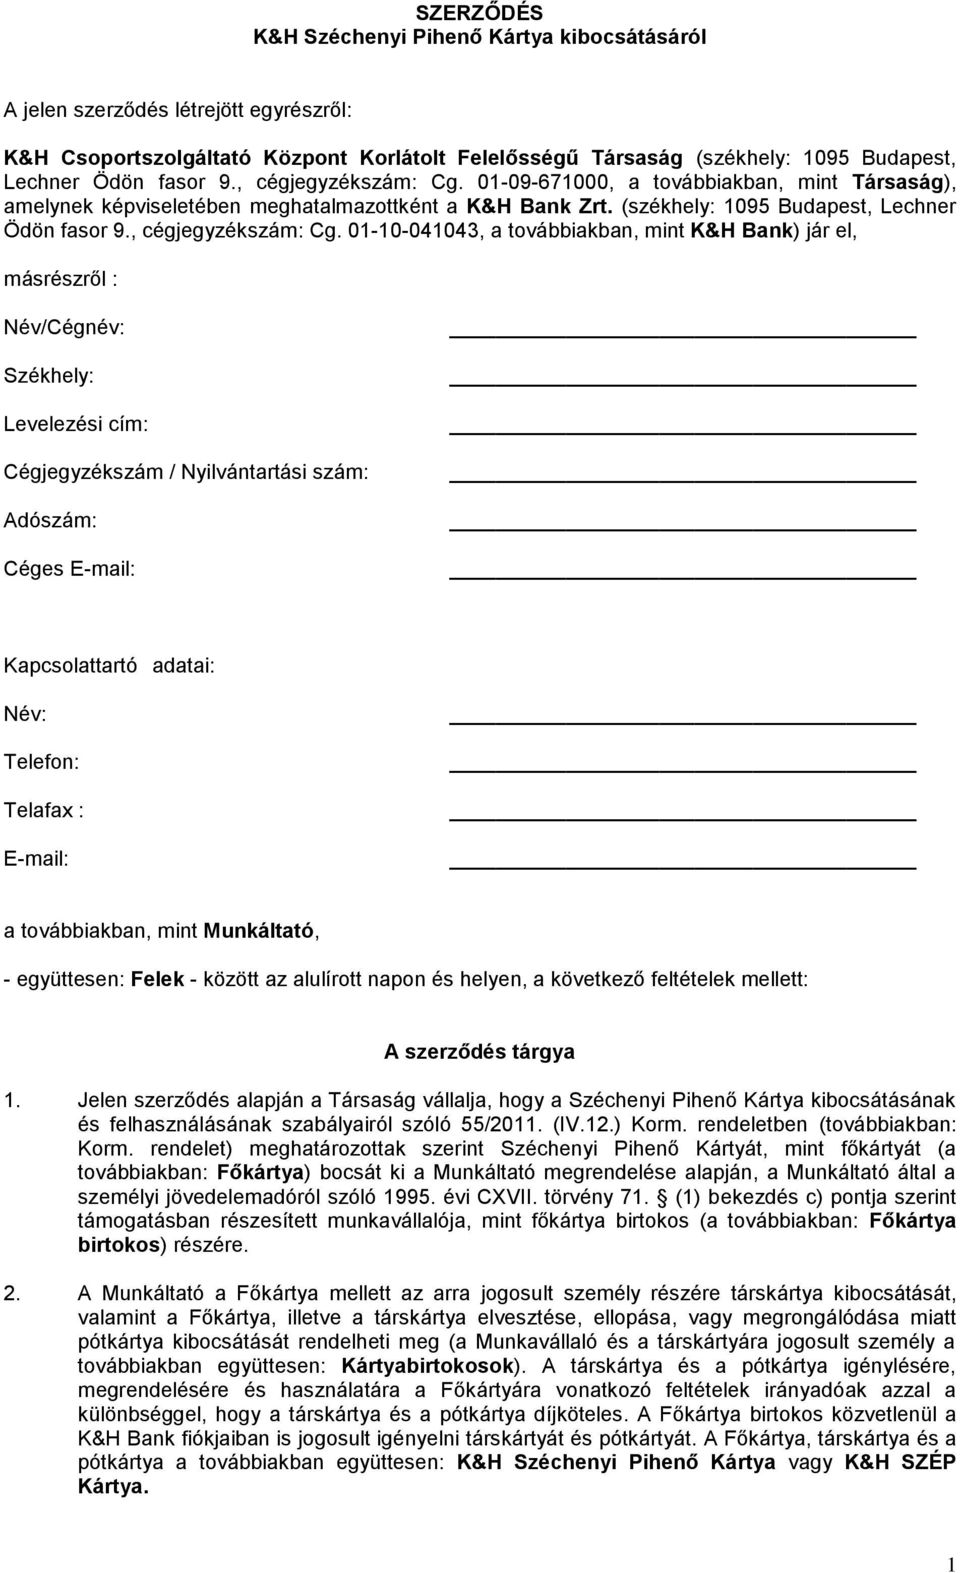 SZERZŐDÉS K&H Széchenyi Pihenő Kártya kibocsátásáról - PDF Ingyenes letöltés